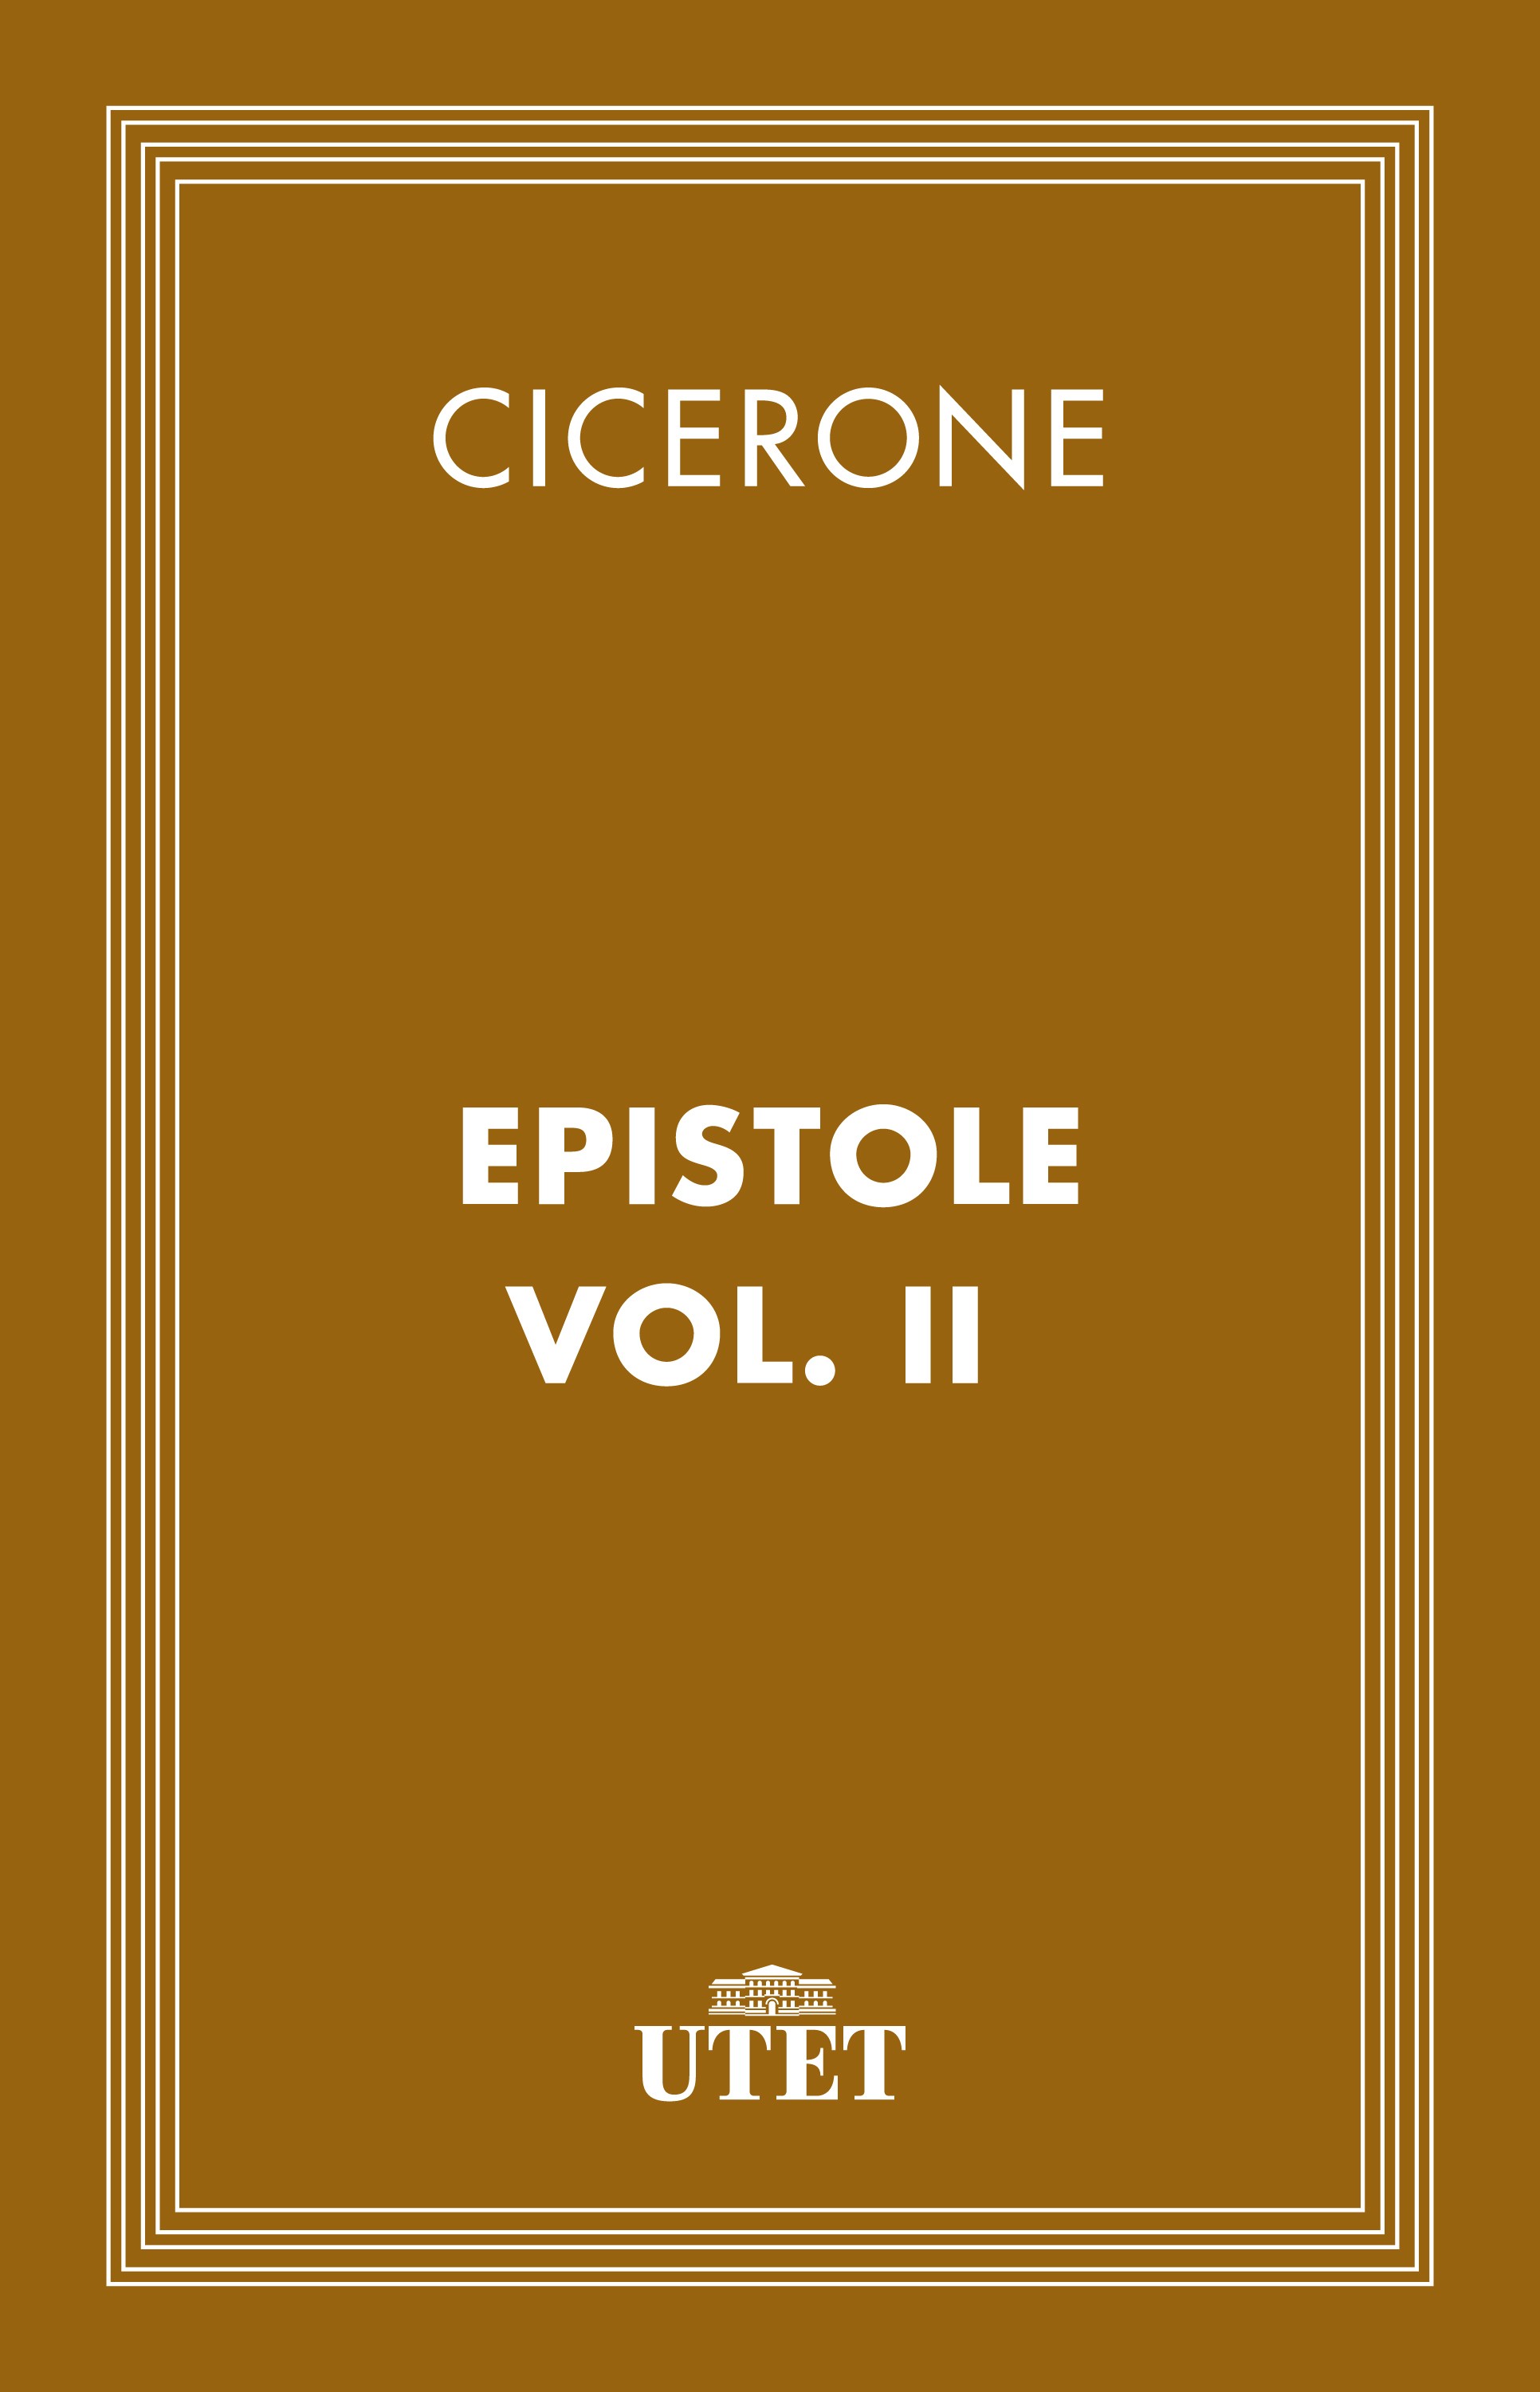 Epistole/Vol. III - Librerie.coop